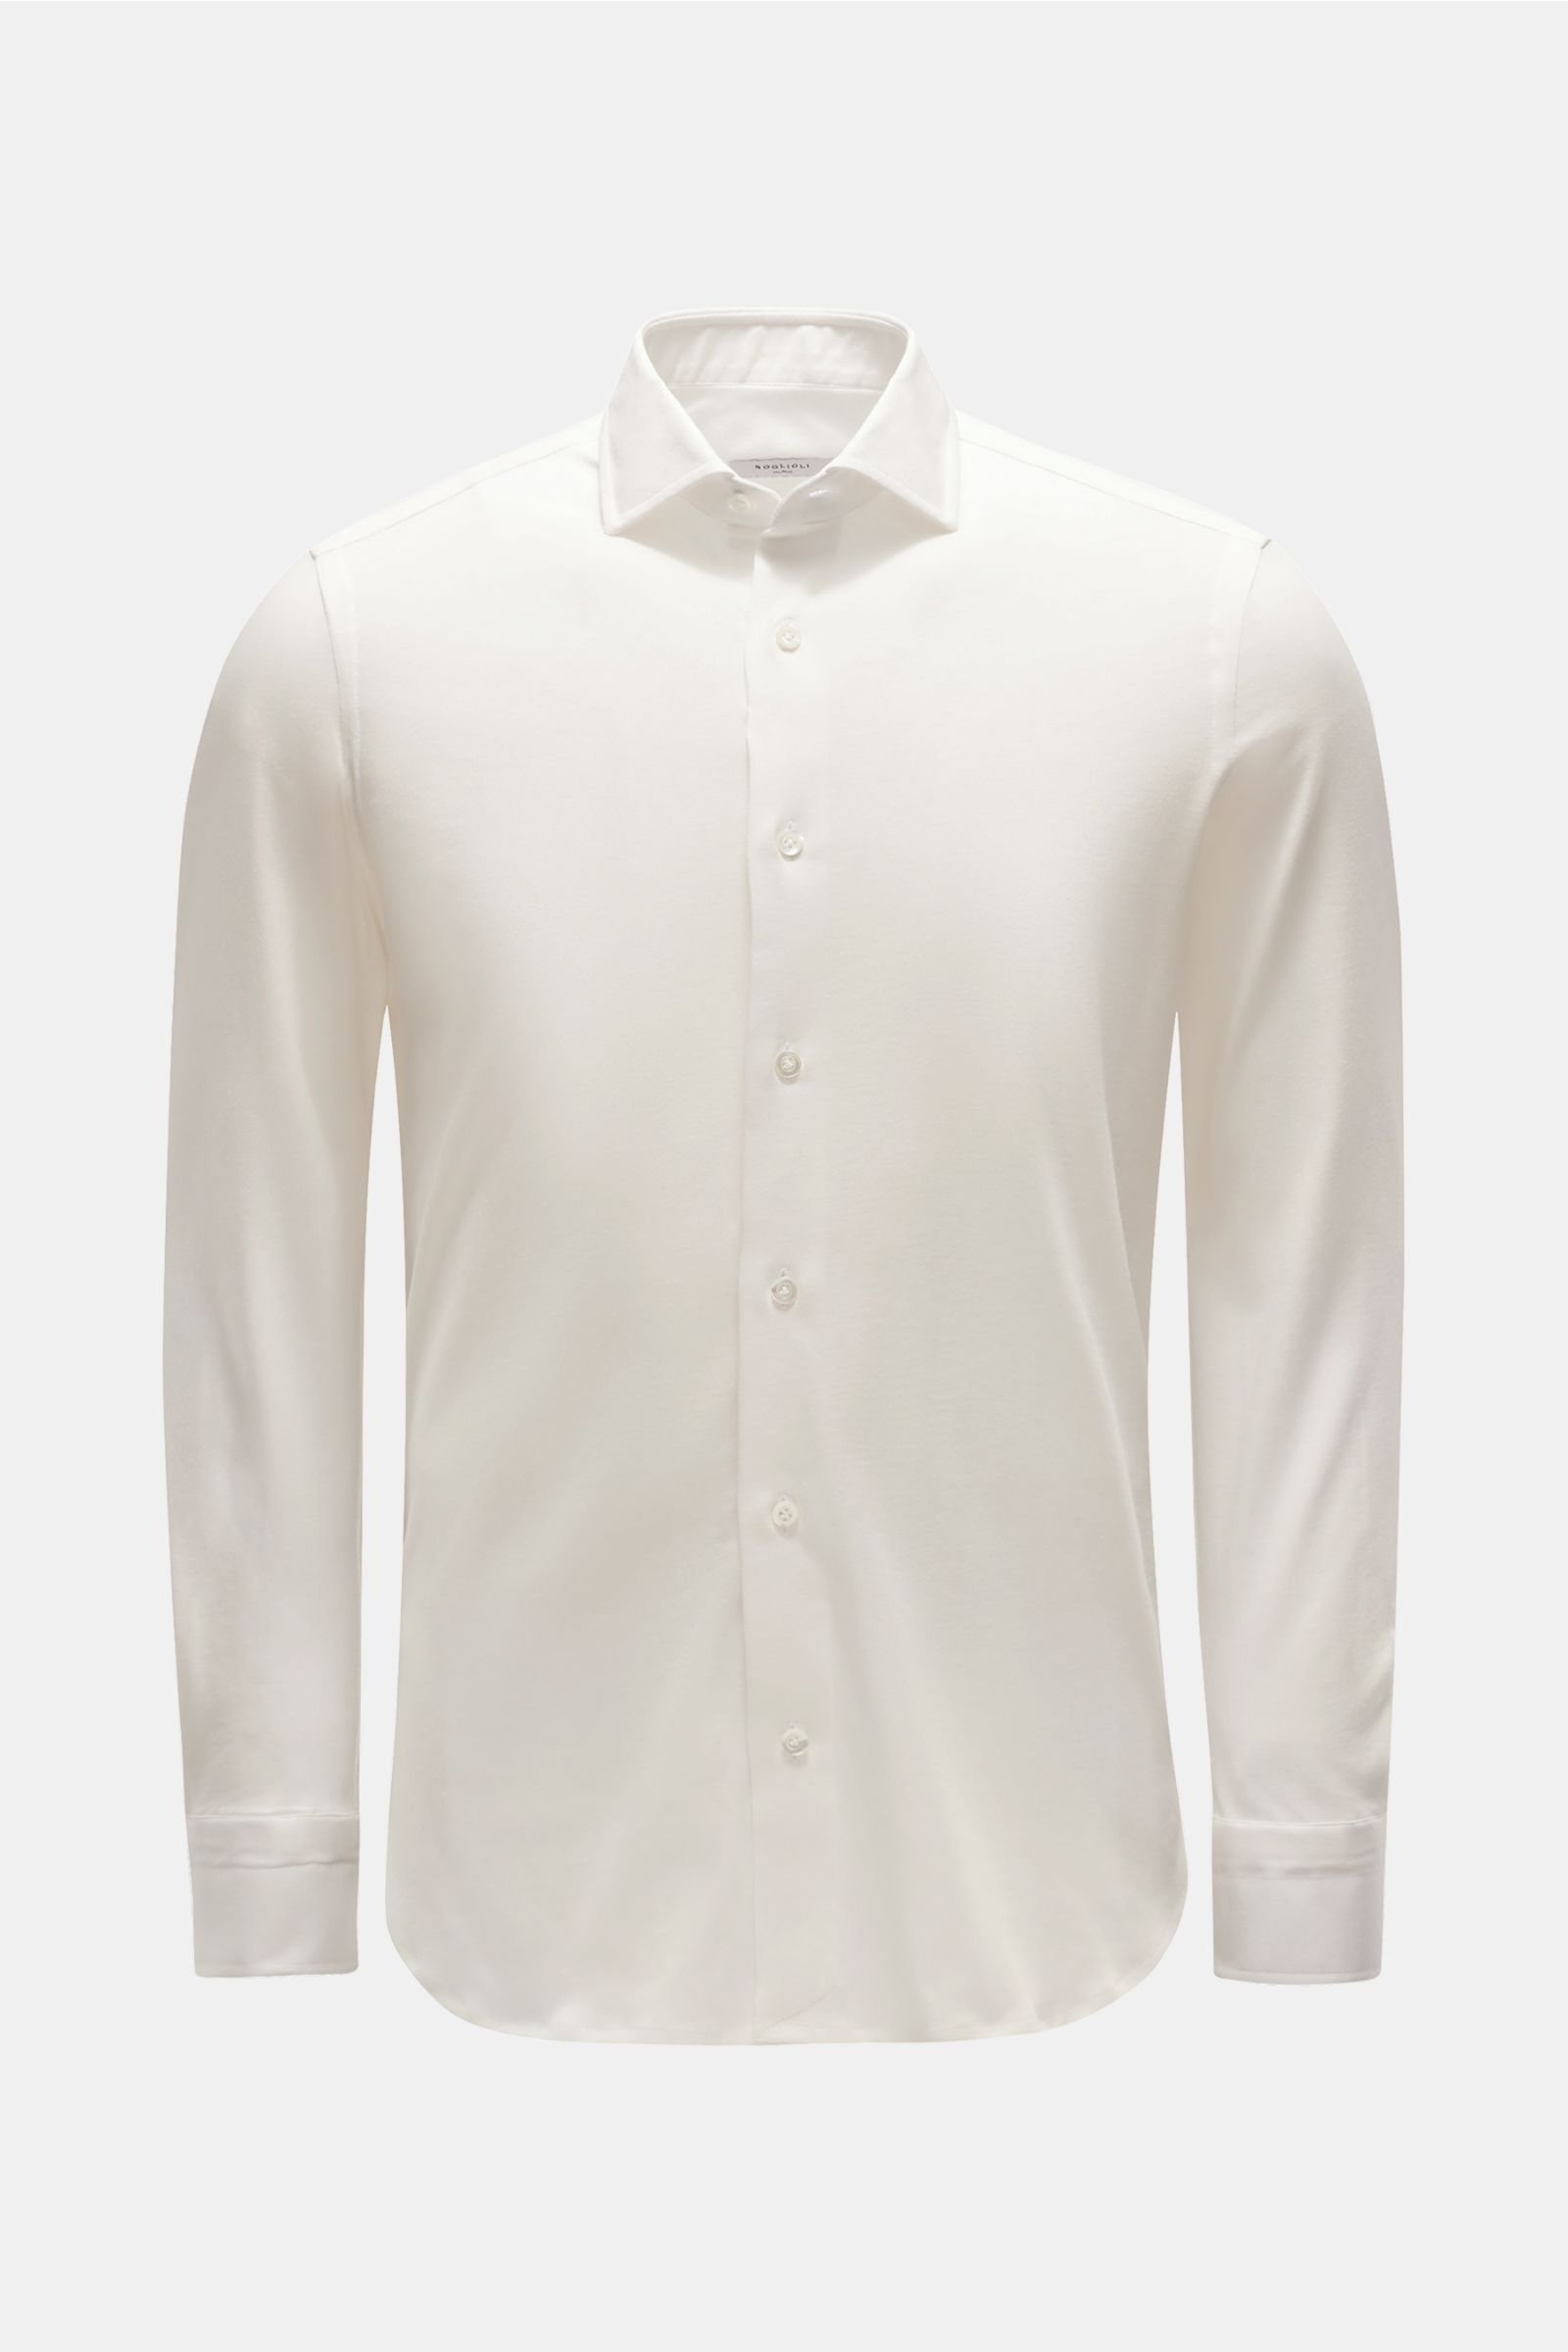 Jersey shirt shark collar off-white